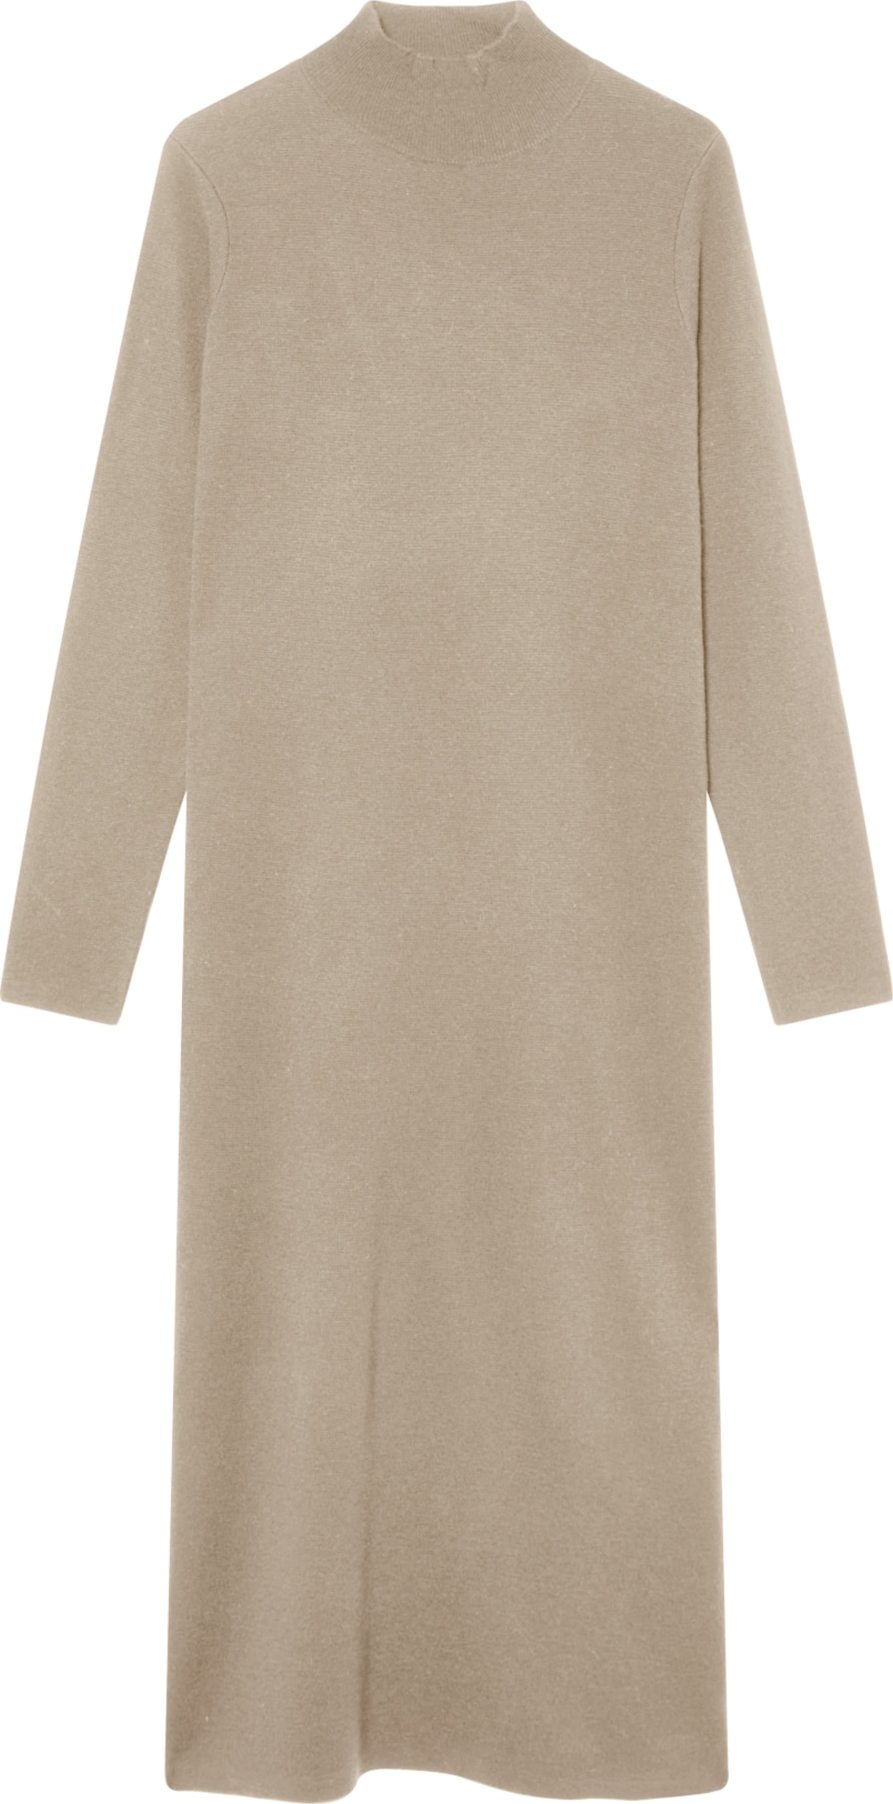 ECOALF Úpletové šaty 'Inma' světle hnědá